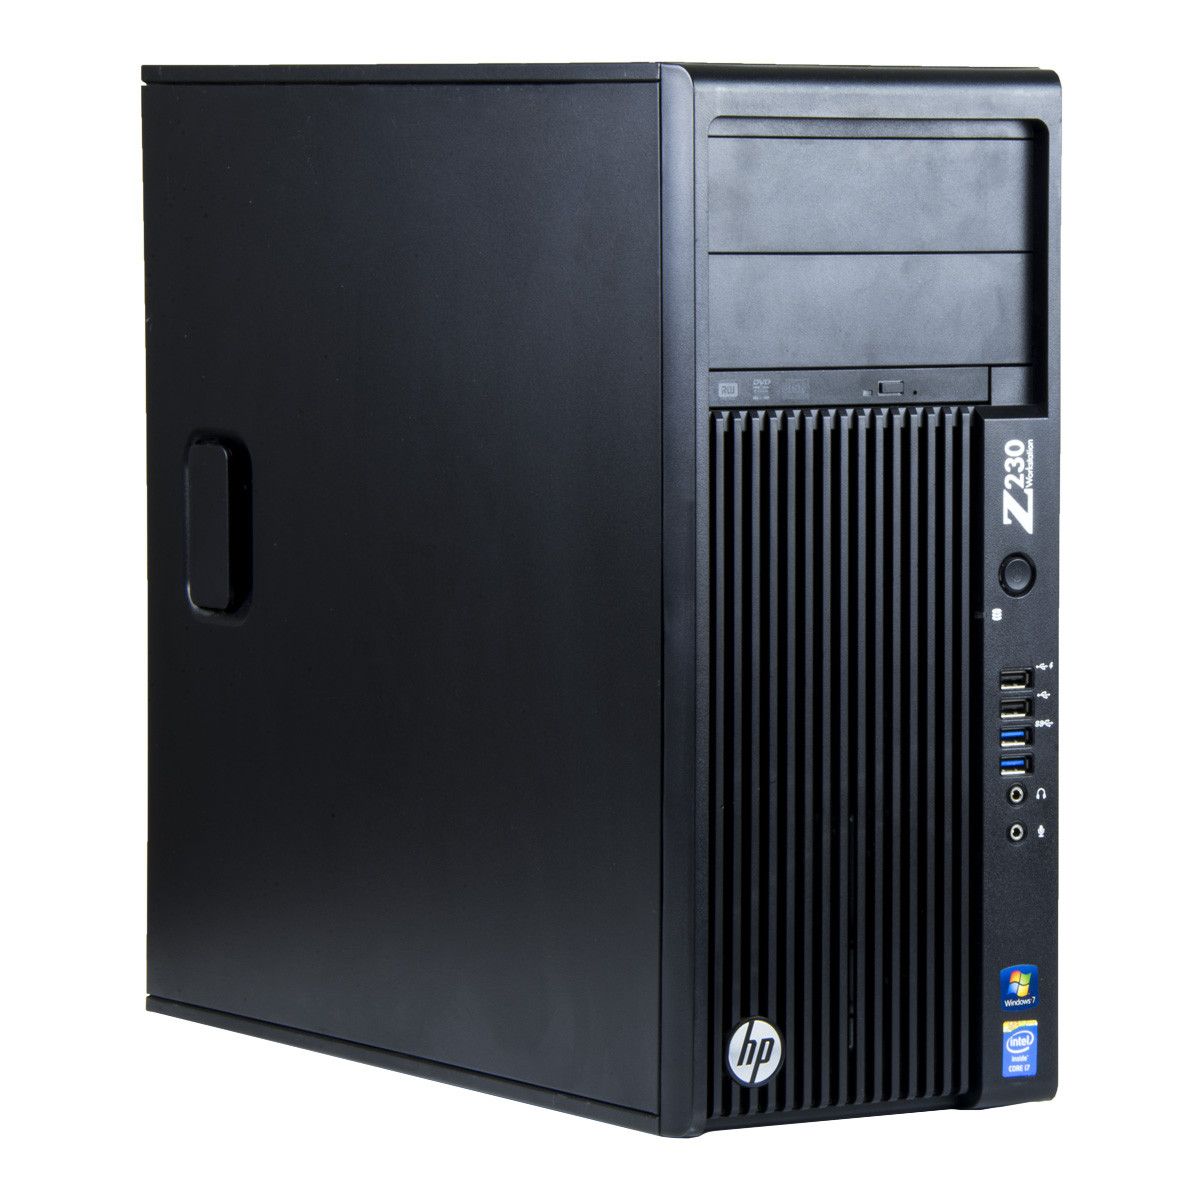 HP Z230, Xeon E3-1225 v3 pana la 3.60GHz, 16GB DDR3, 240GB SSD, DVD, Tower, workstation refurbished_3